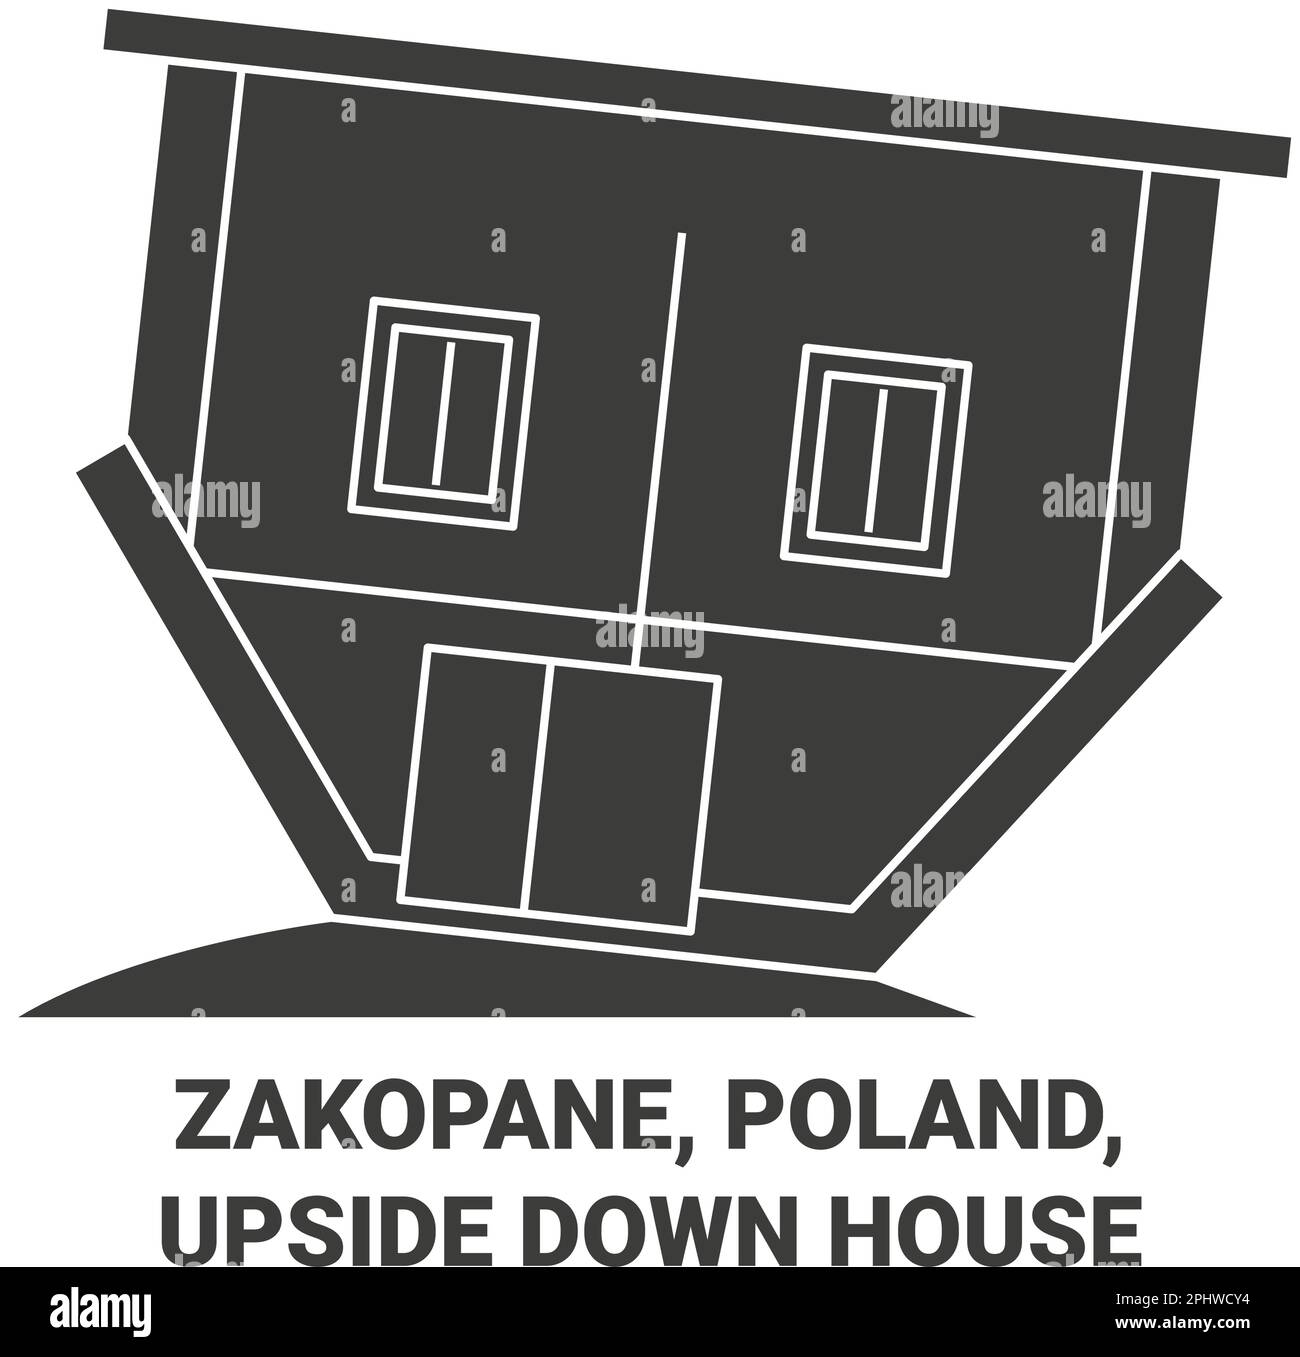 Pologne, Zakopane, renverse down House voyage illustration vectorielle Illustration de Vecteur